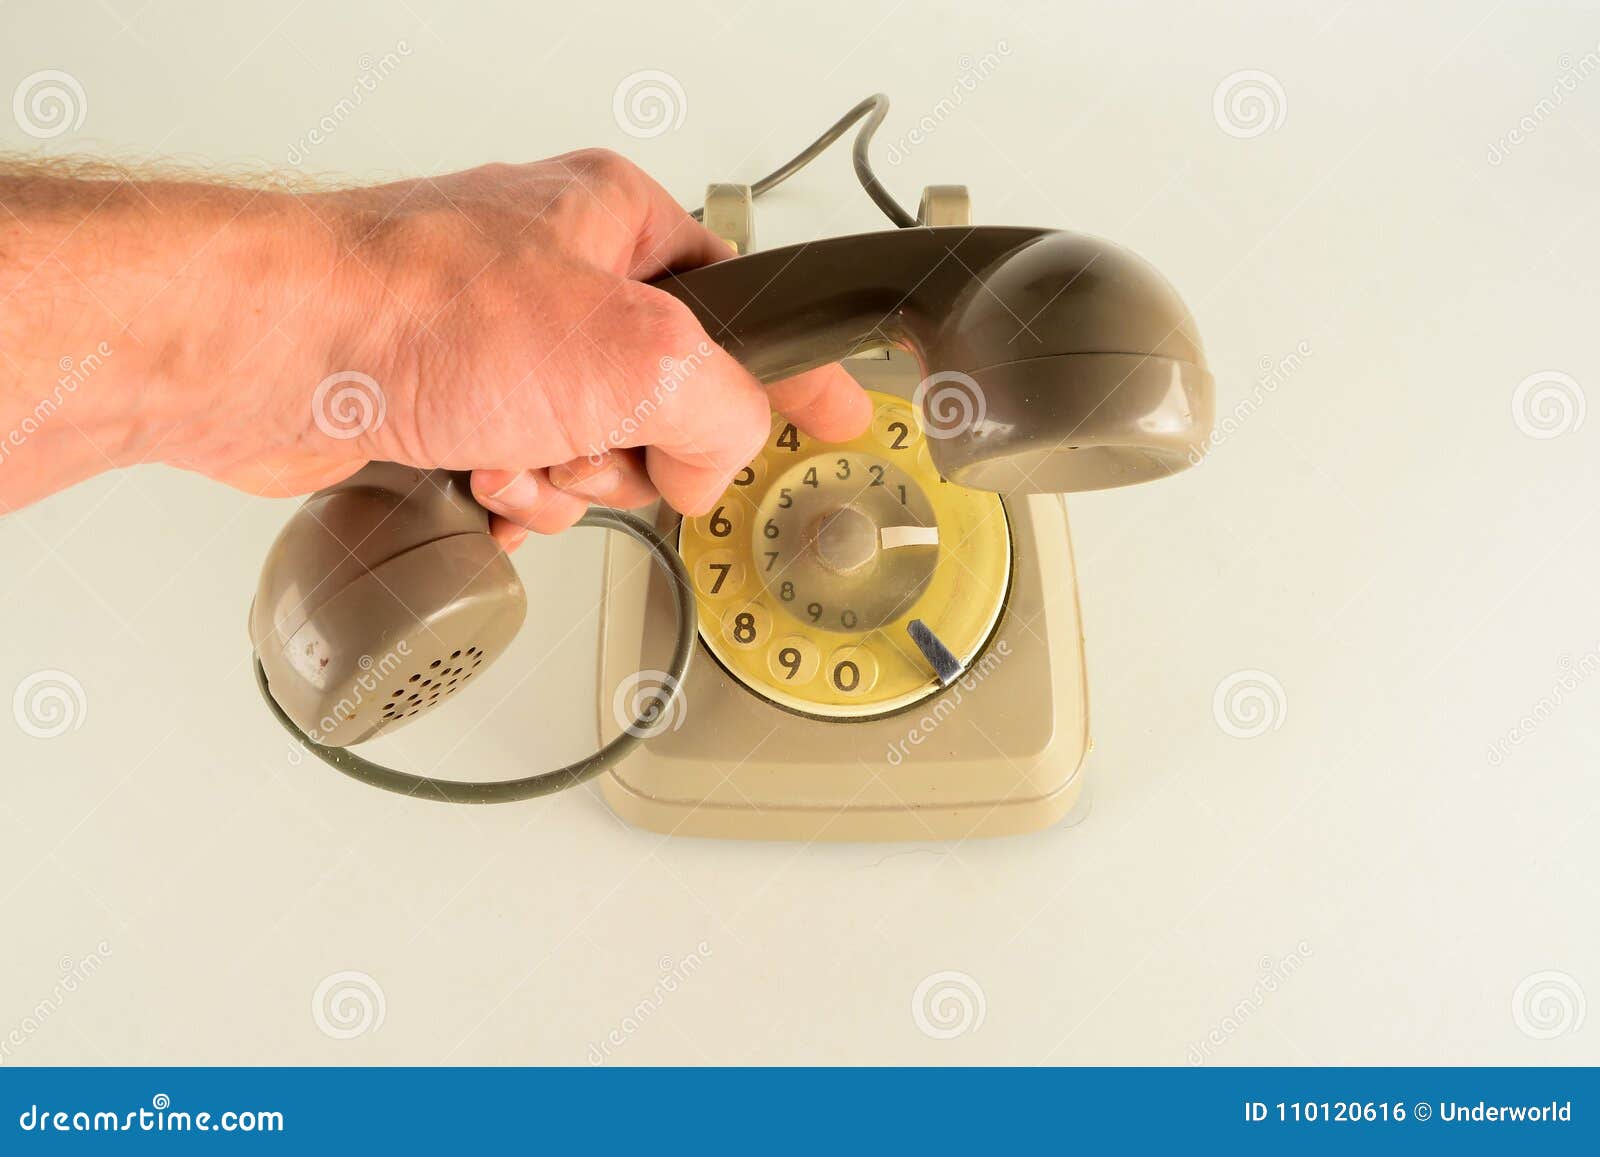 old vintage analogic telephone